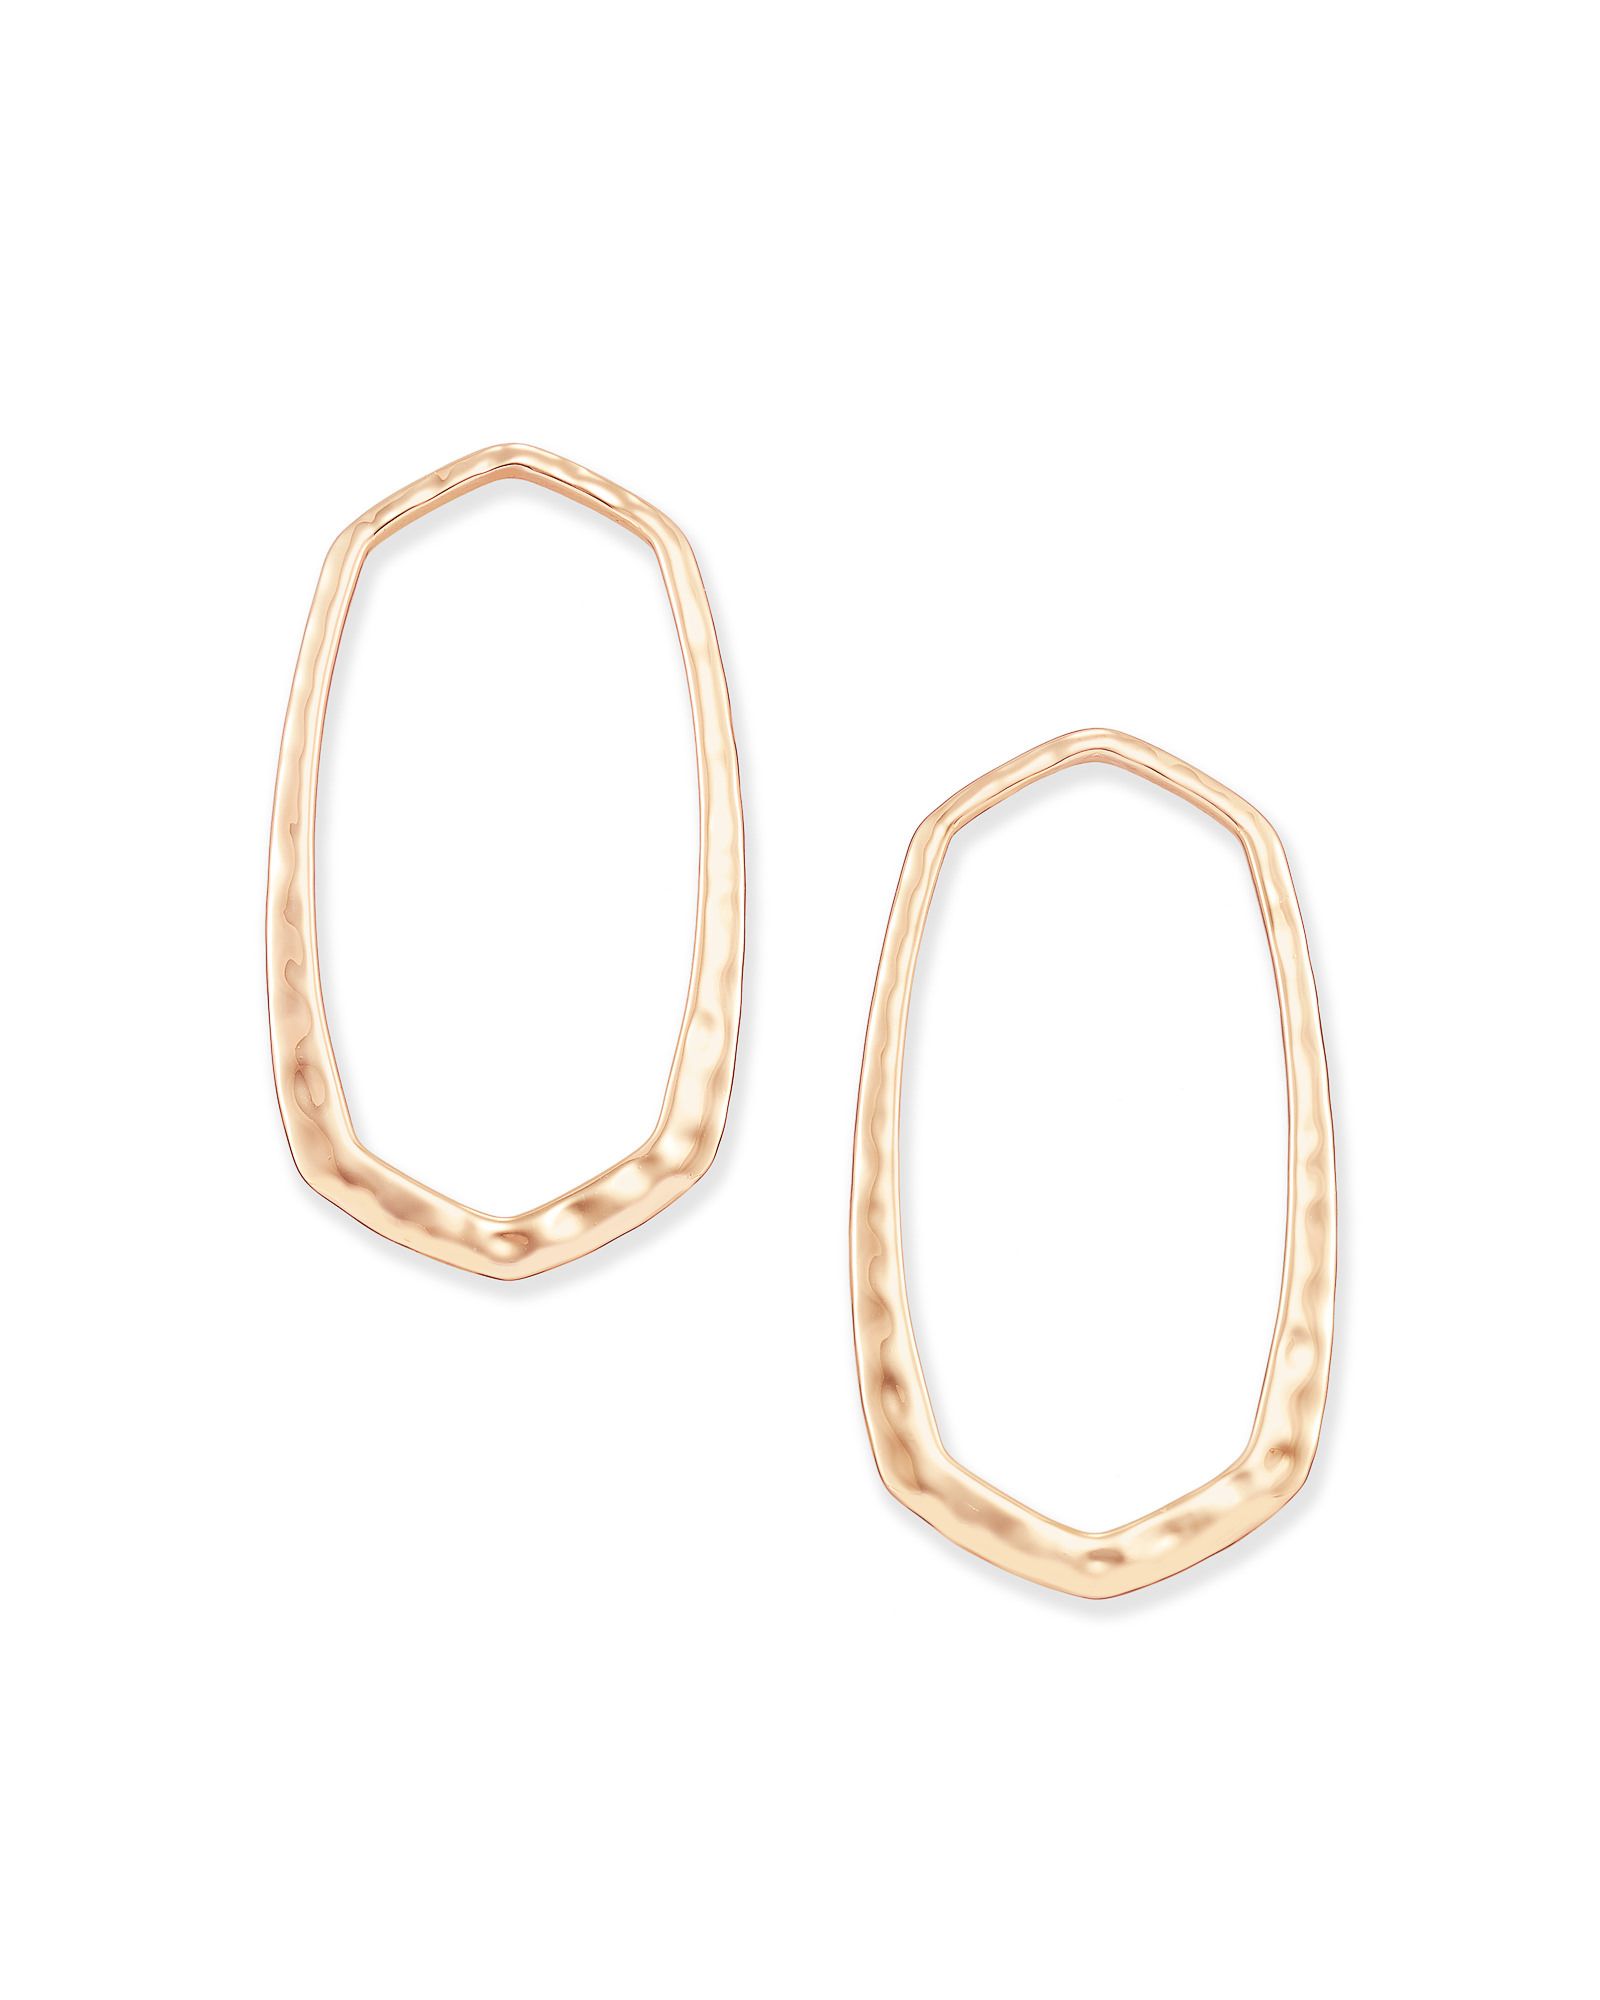 Zorte Hoop Earrings in Rose Gold | Kendra Scott